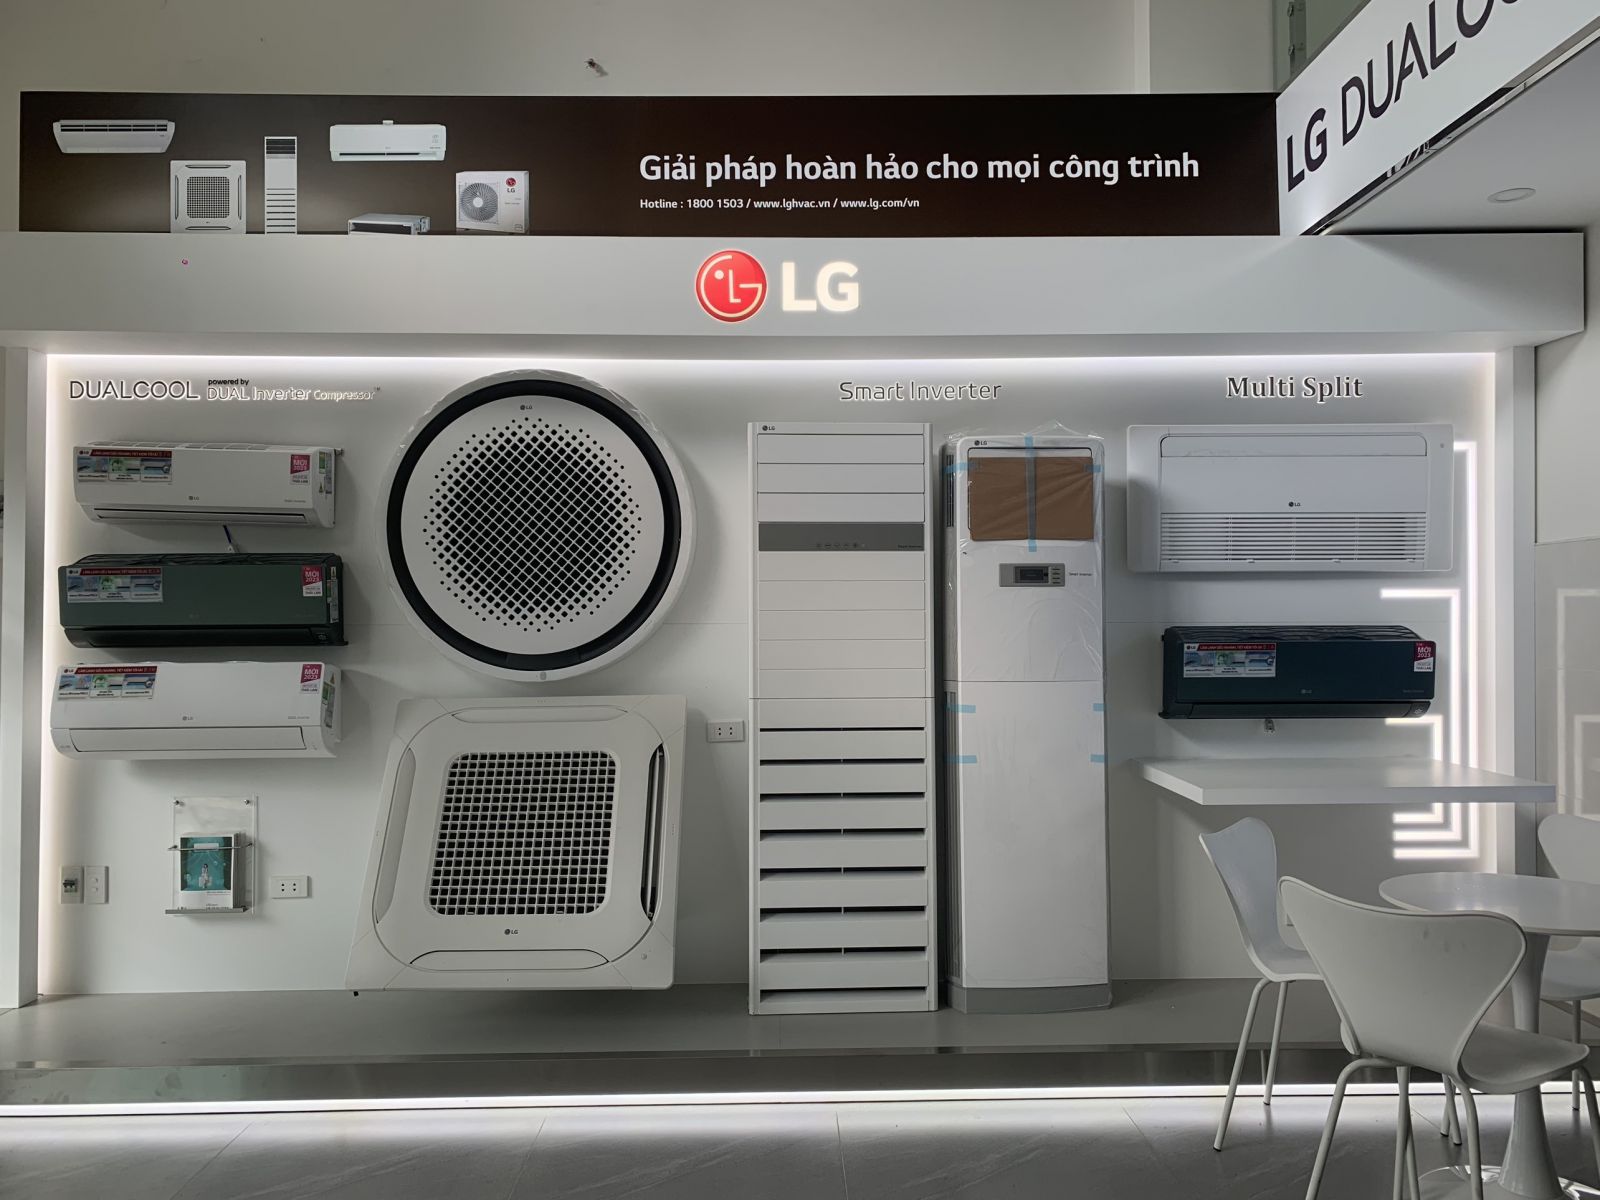 Máy lạnh âm trần LG được sản xuất tại Hàn Quốc có tốt không